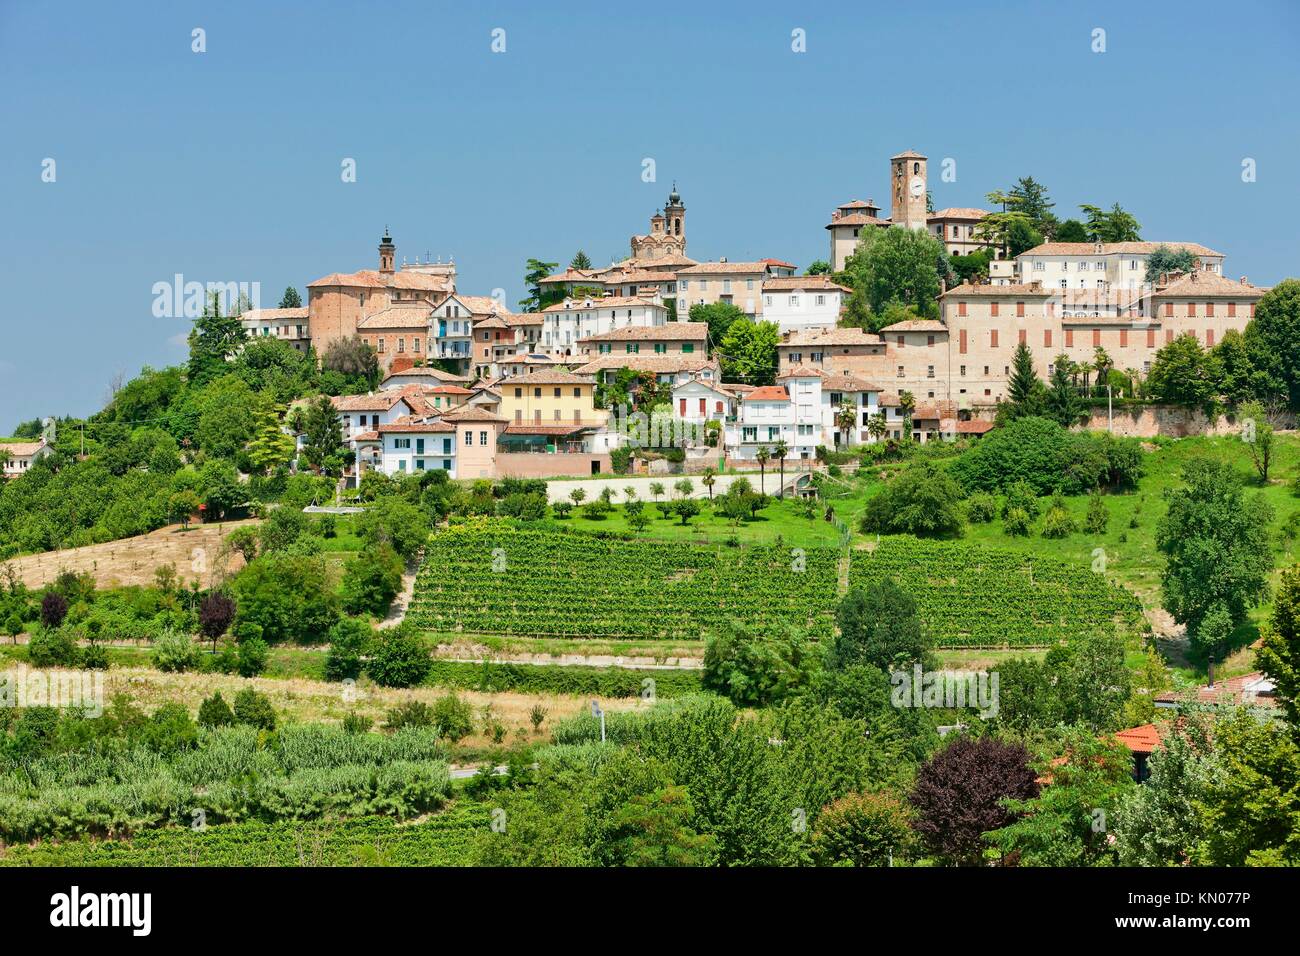 Neive, Piedmont, Italy Stock Photo - Alamy